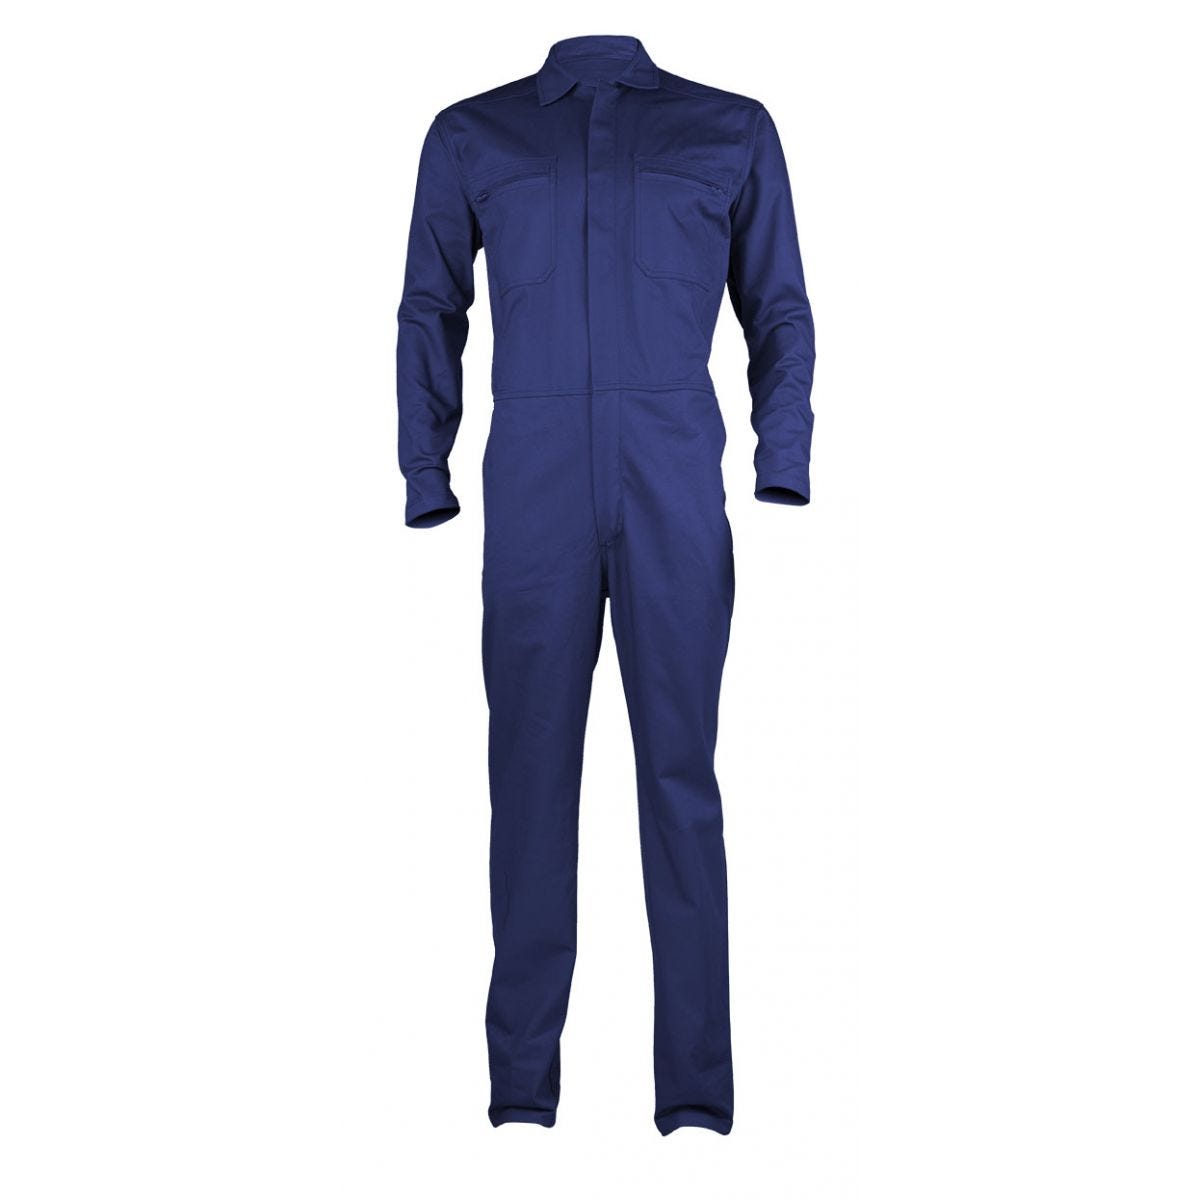 PARTNER Combinaison bleu royal, 100% coton, 280g/m² - COVERGUARD - Taille L 0